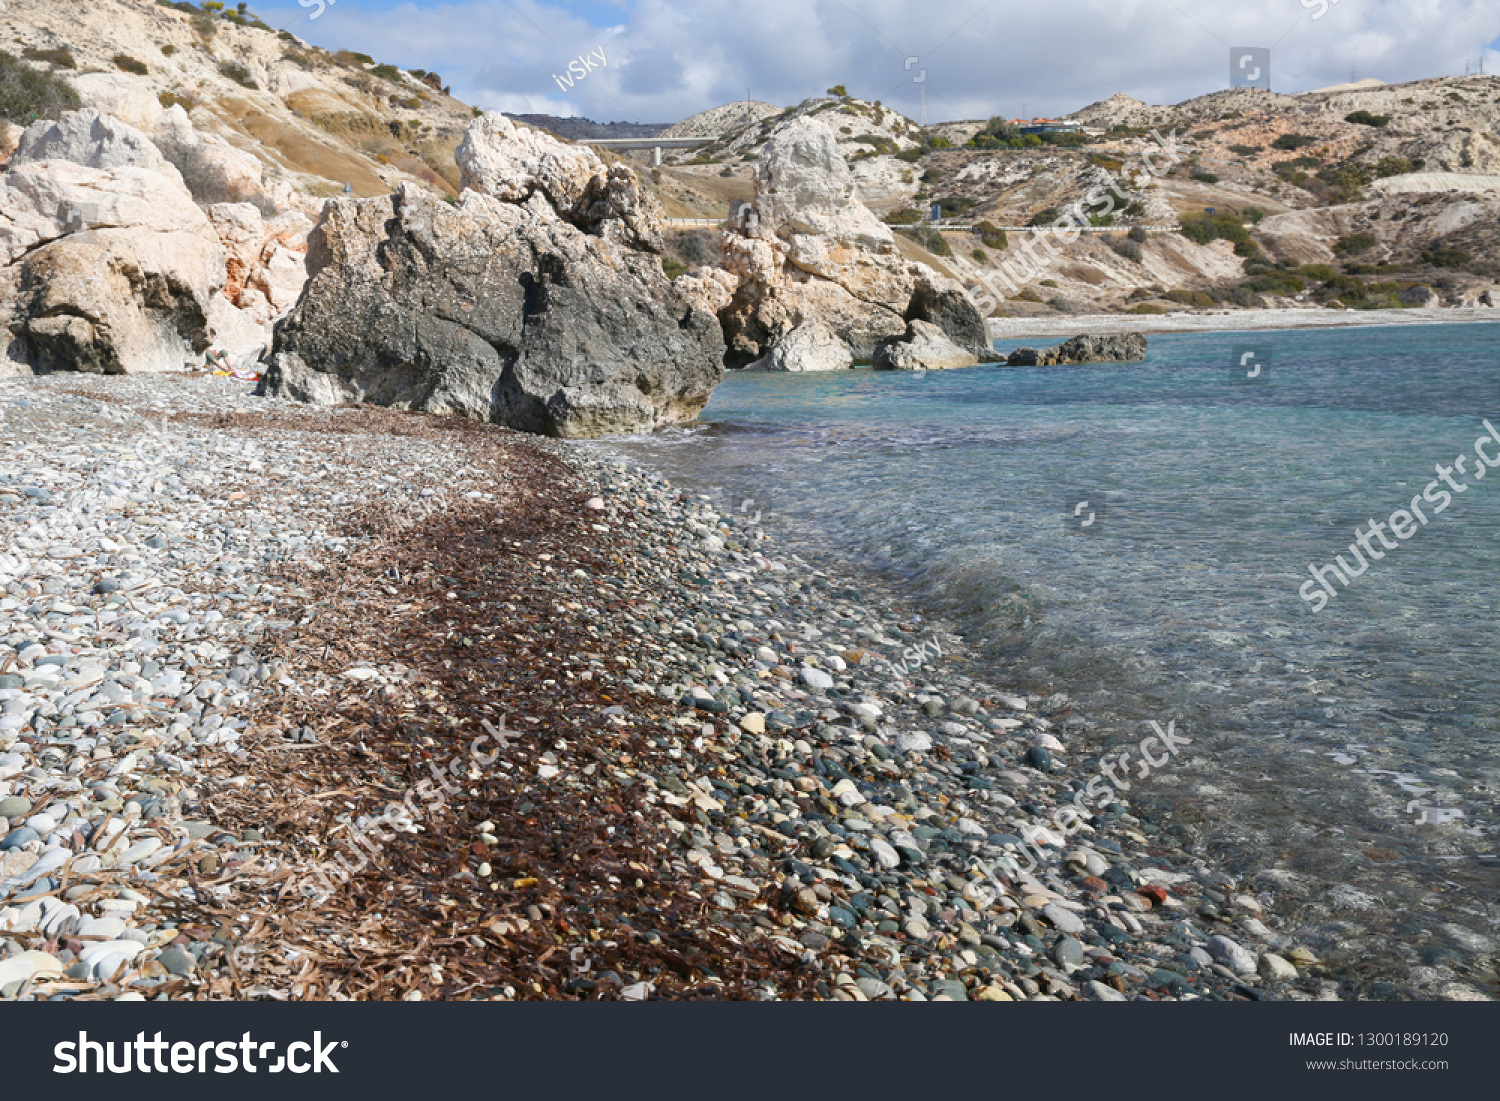 Cyprus - Mediterranean Sea beach. Petra tou Romiou - Aphrodite's Rock. #1300189120